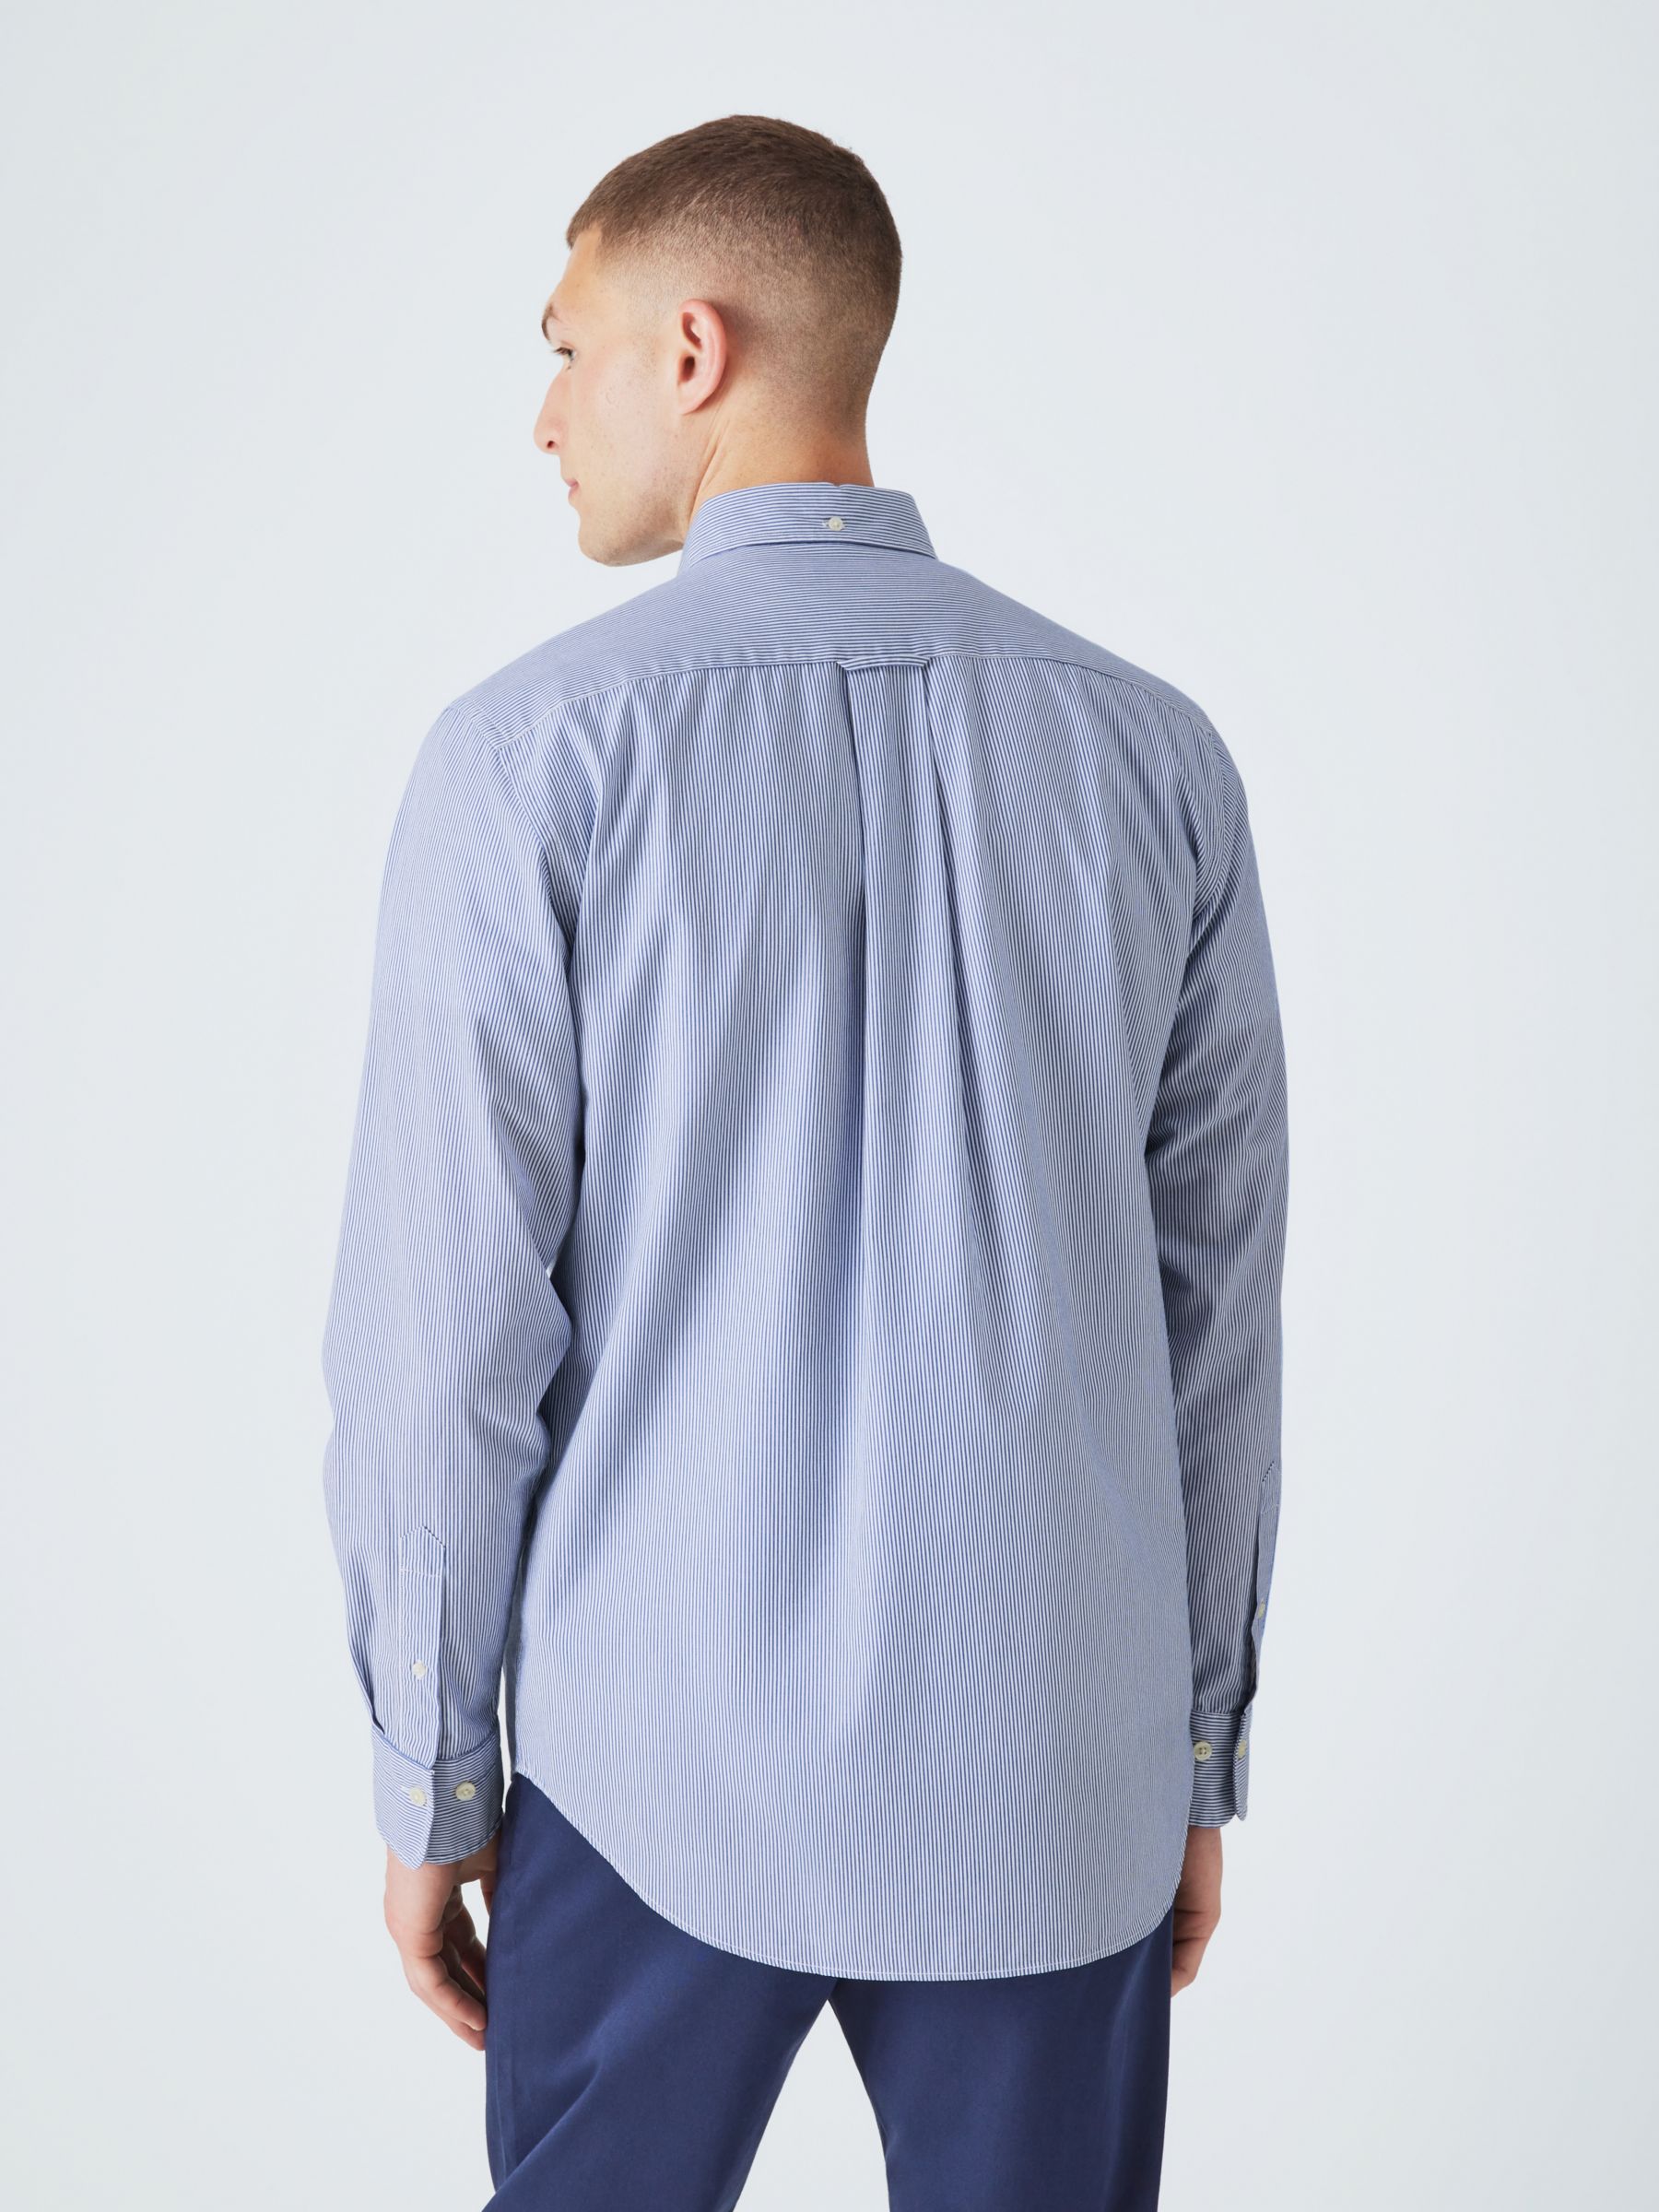 Buy GANT Poplin Banker Stripe Shirt, 436 College Blue Online at johnlewis.com